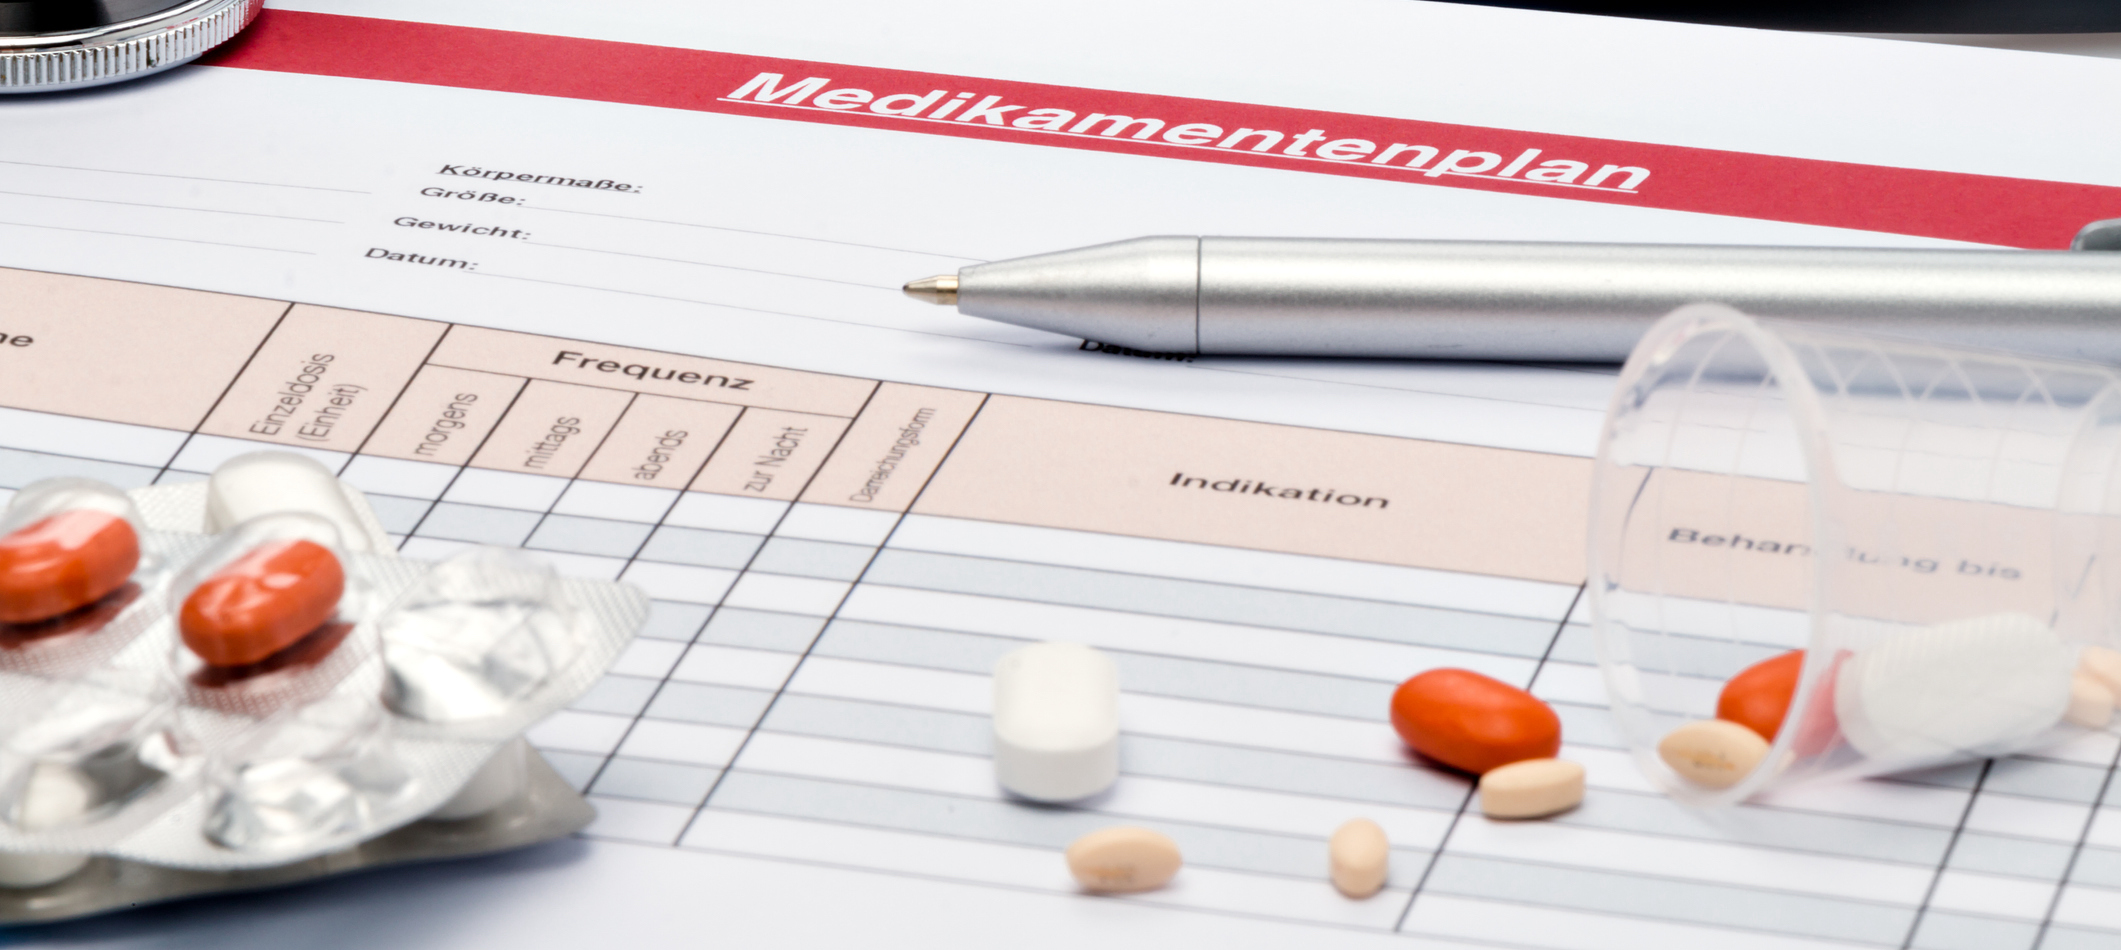 Ein Medikationsplan liegt auf einem Tisch zusammen, zusammen mit Pillen. Das Bild symbolisiert die Leichtigkeit, mit der hellomed auf Änderungen bei der Medikation reagieren kann